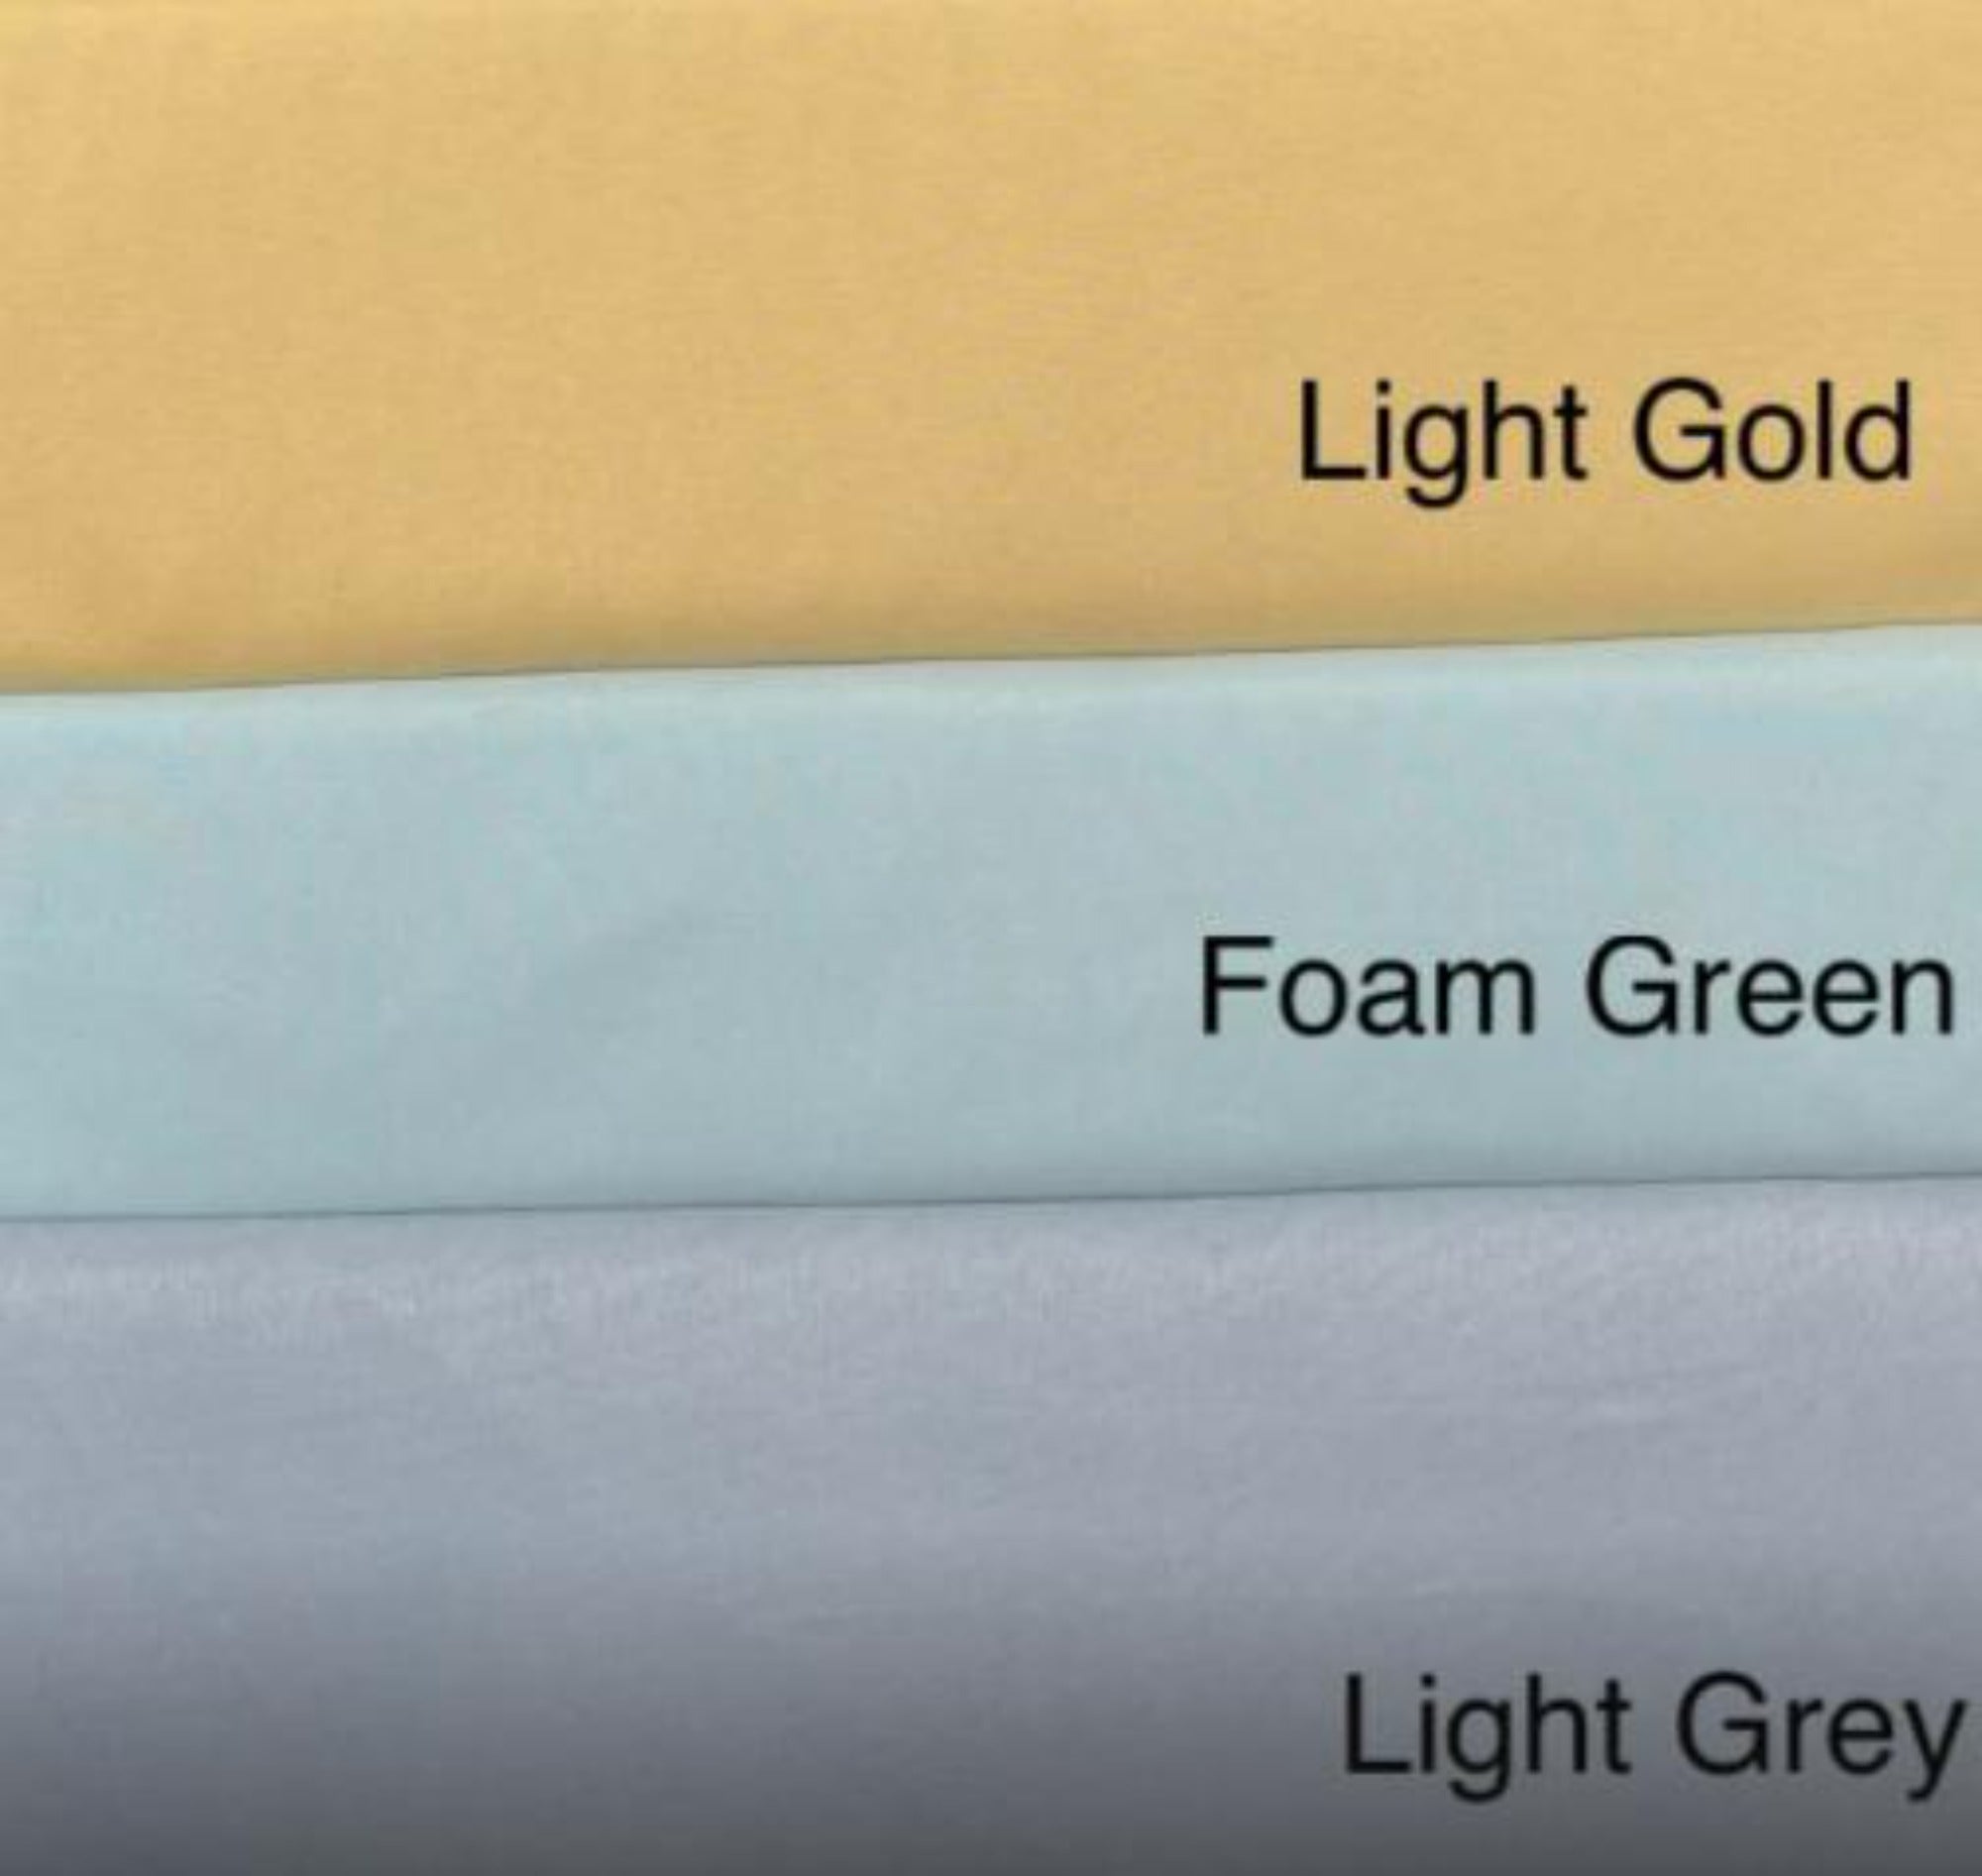 Duvet Cover Set (100% Polyester) - Light Gold, Foam Green, Light Grey